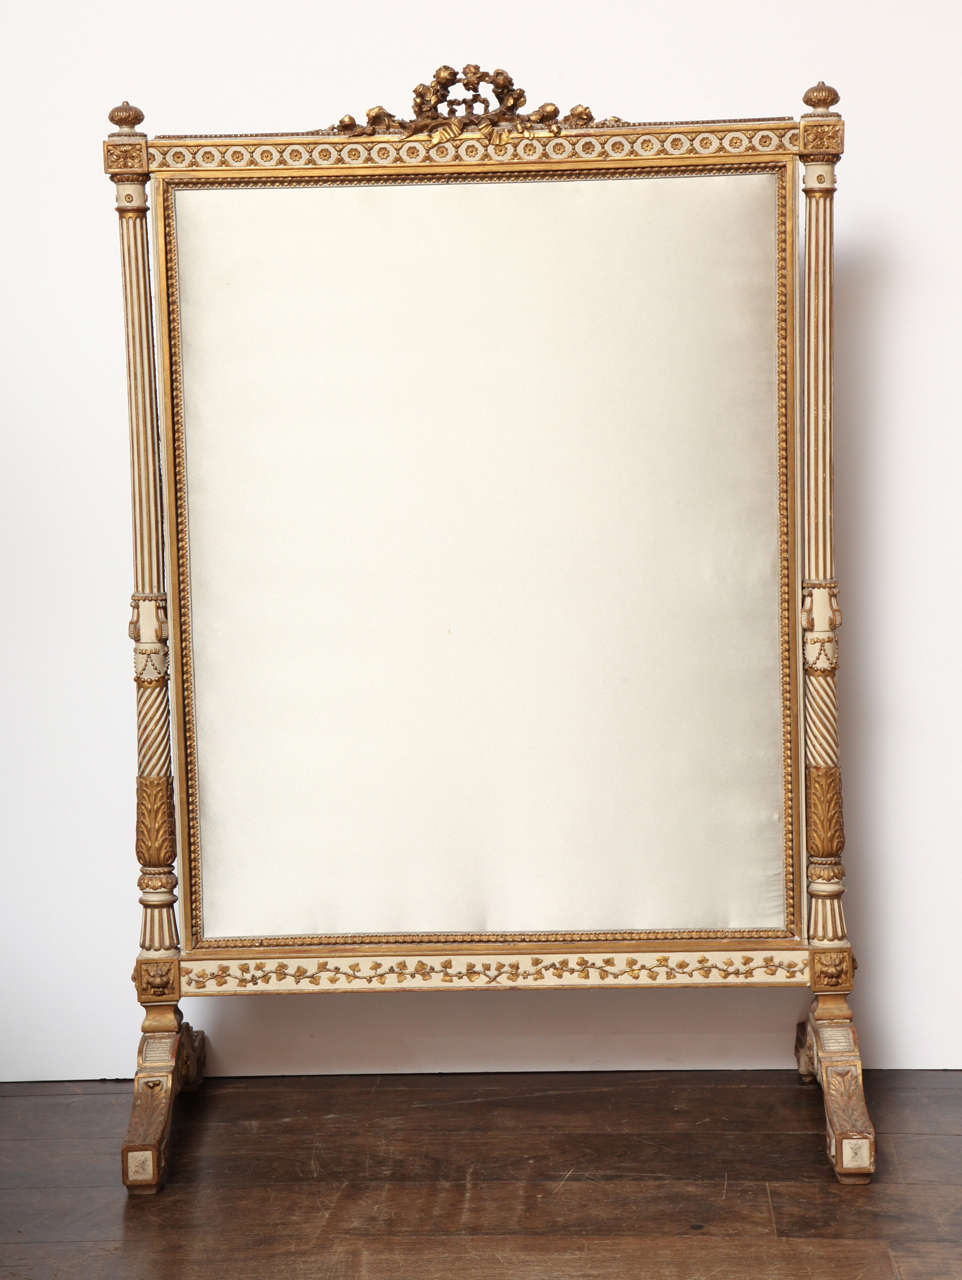 Dieser bemalte und vergoldete Kaminschirm im Louis-XVI-Stil stammt von Francois Linke (1855-1946), dem größten Möbelhersteller der Pariser Belle Epoque. Der Sessel ist zwar nicht signiert, aber die Kohlrosen- und Blattverzierung ist identisch mit